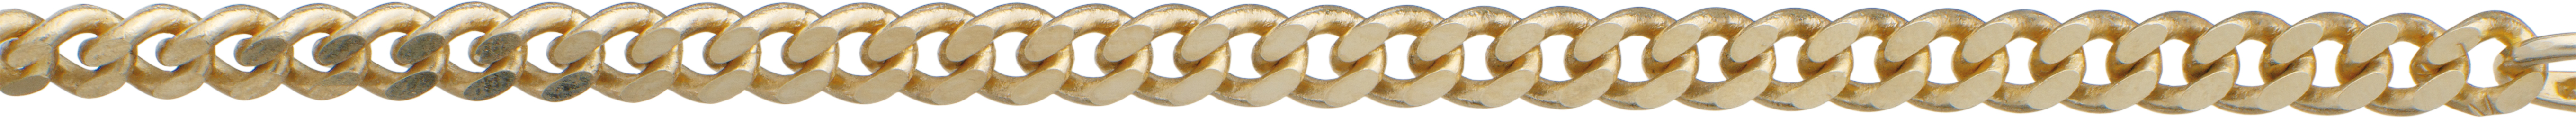 Pancerka płaska złoto 333/-żółte złoto 4,00mm, grubość drutu 1,20mm